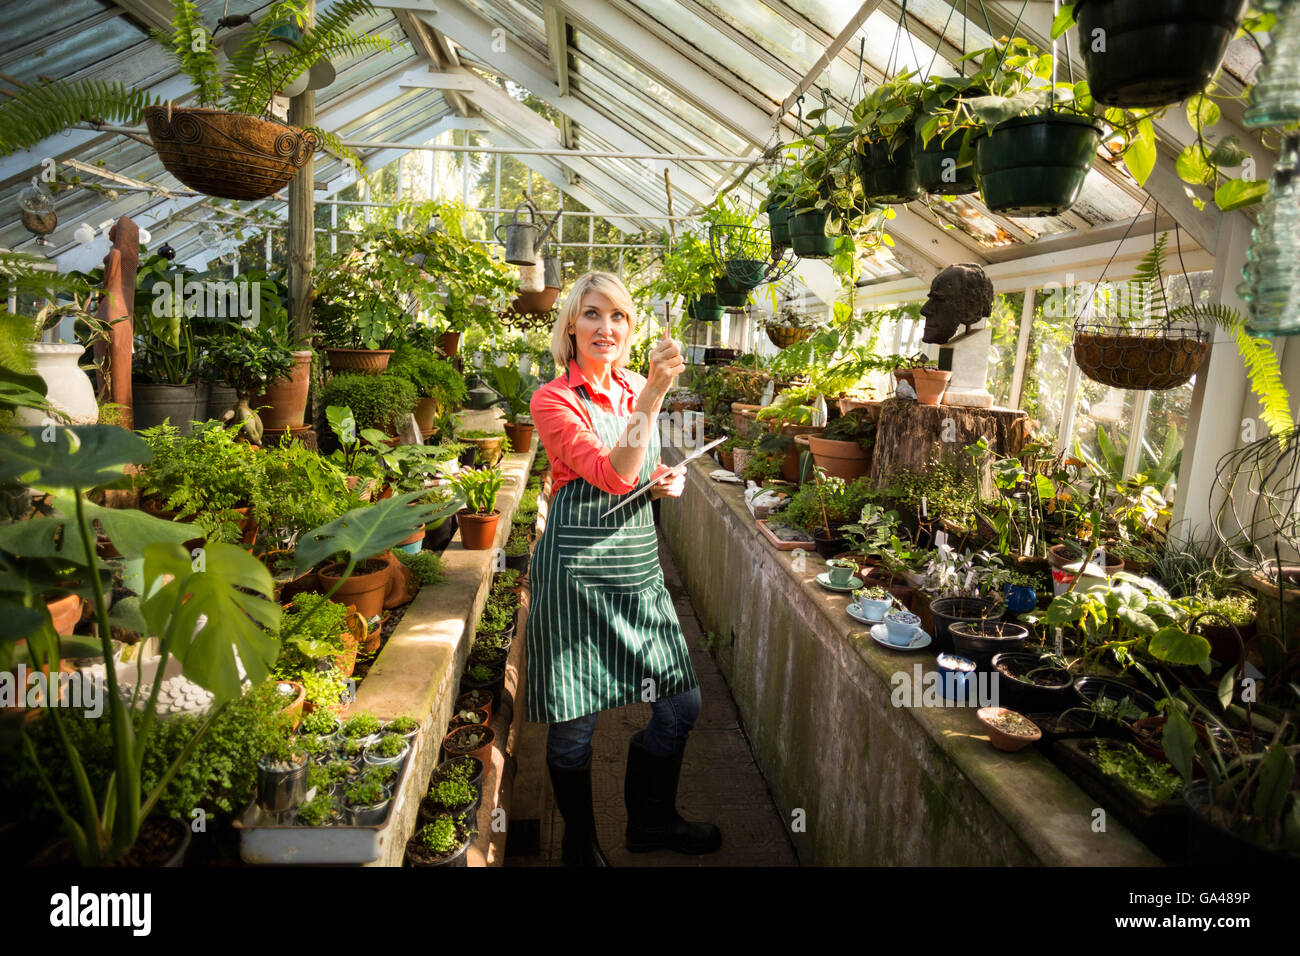 Jardinero hembra examinar plantas en invernadero Foto de stock